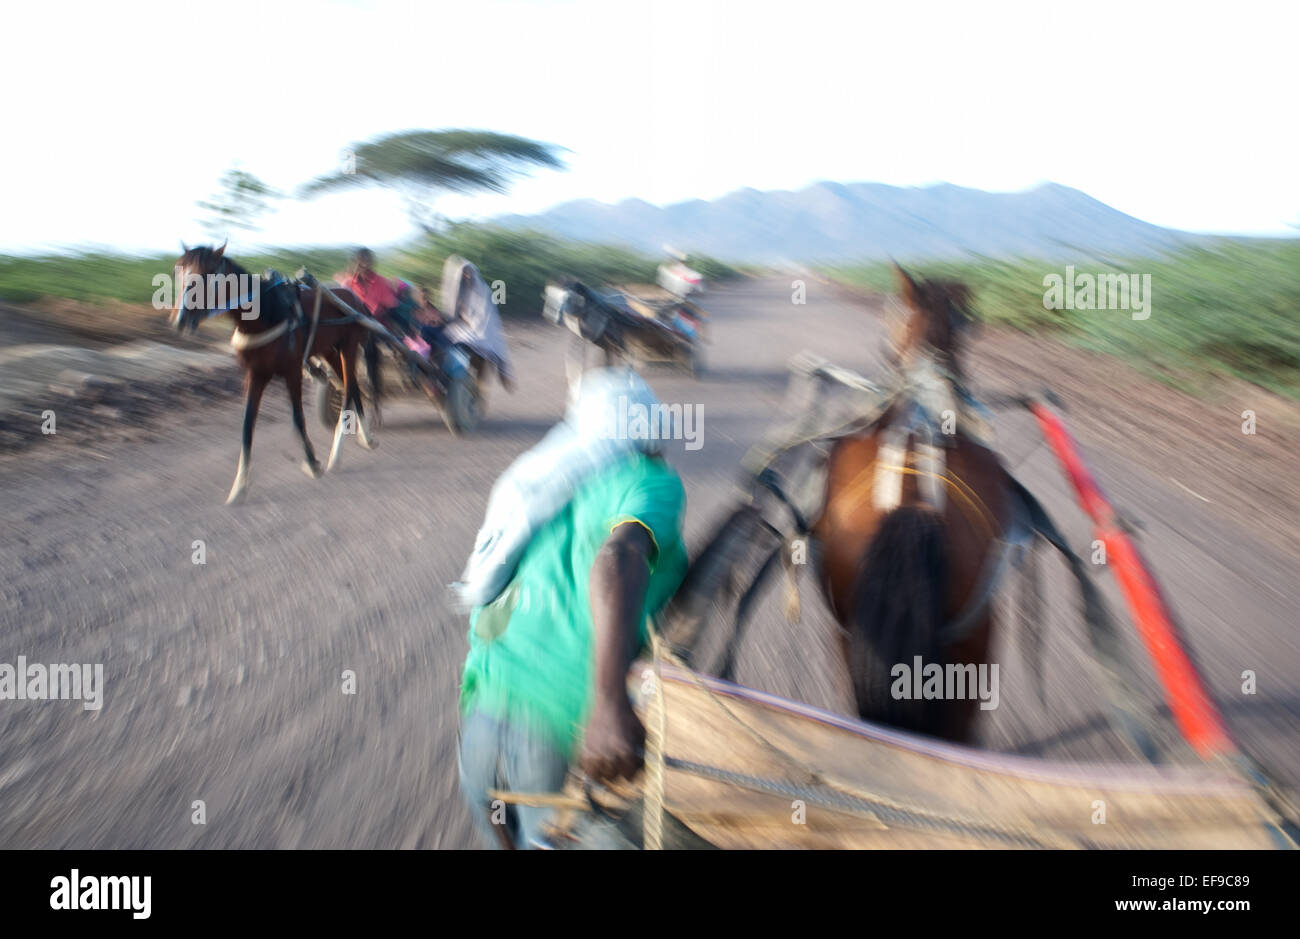 Un autista è tirando il suo cavallo carrello per aiutare il cavallo a muoversi. Sullo sfondo, il cratere Fantale è visibile (Etiopia) Foto Stock